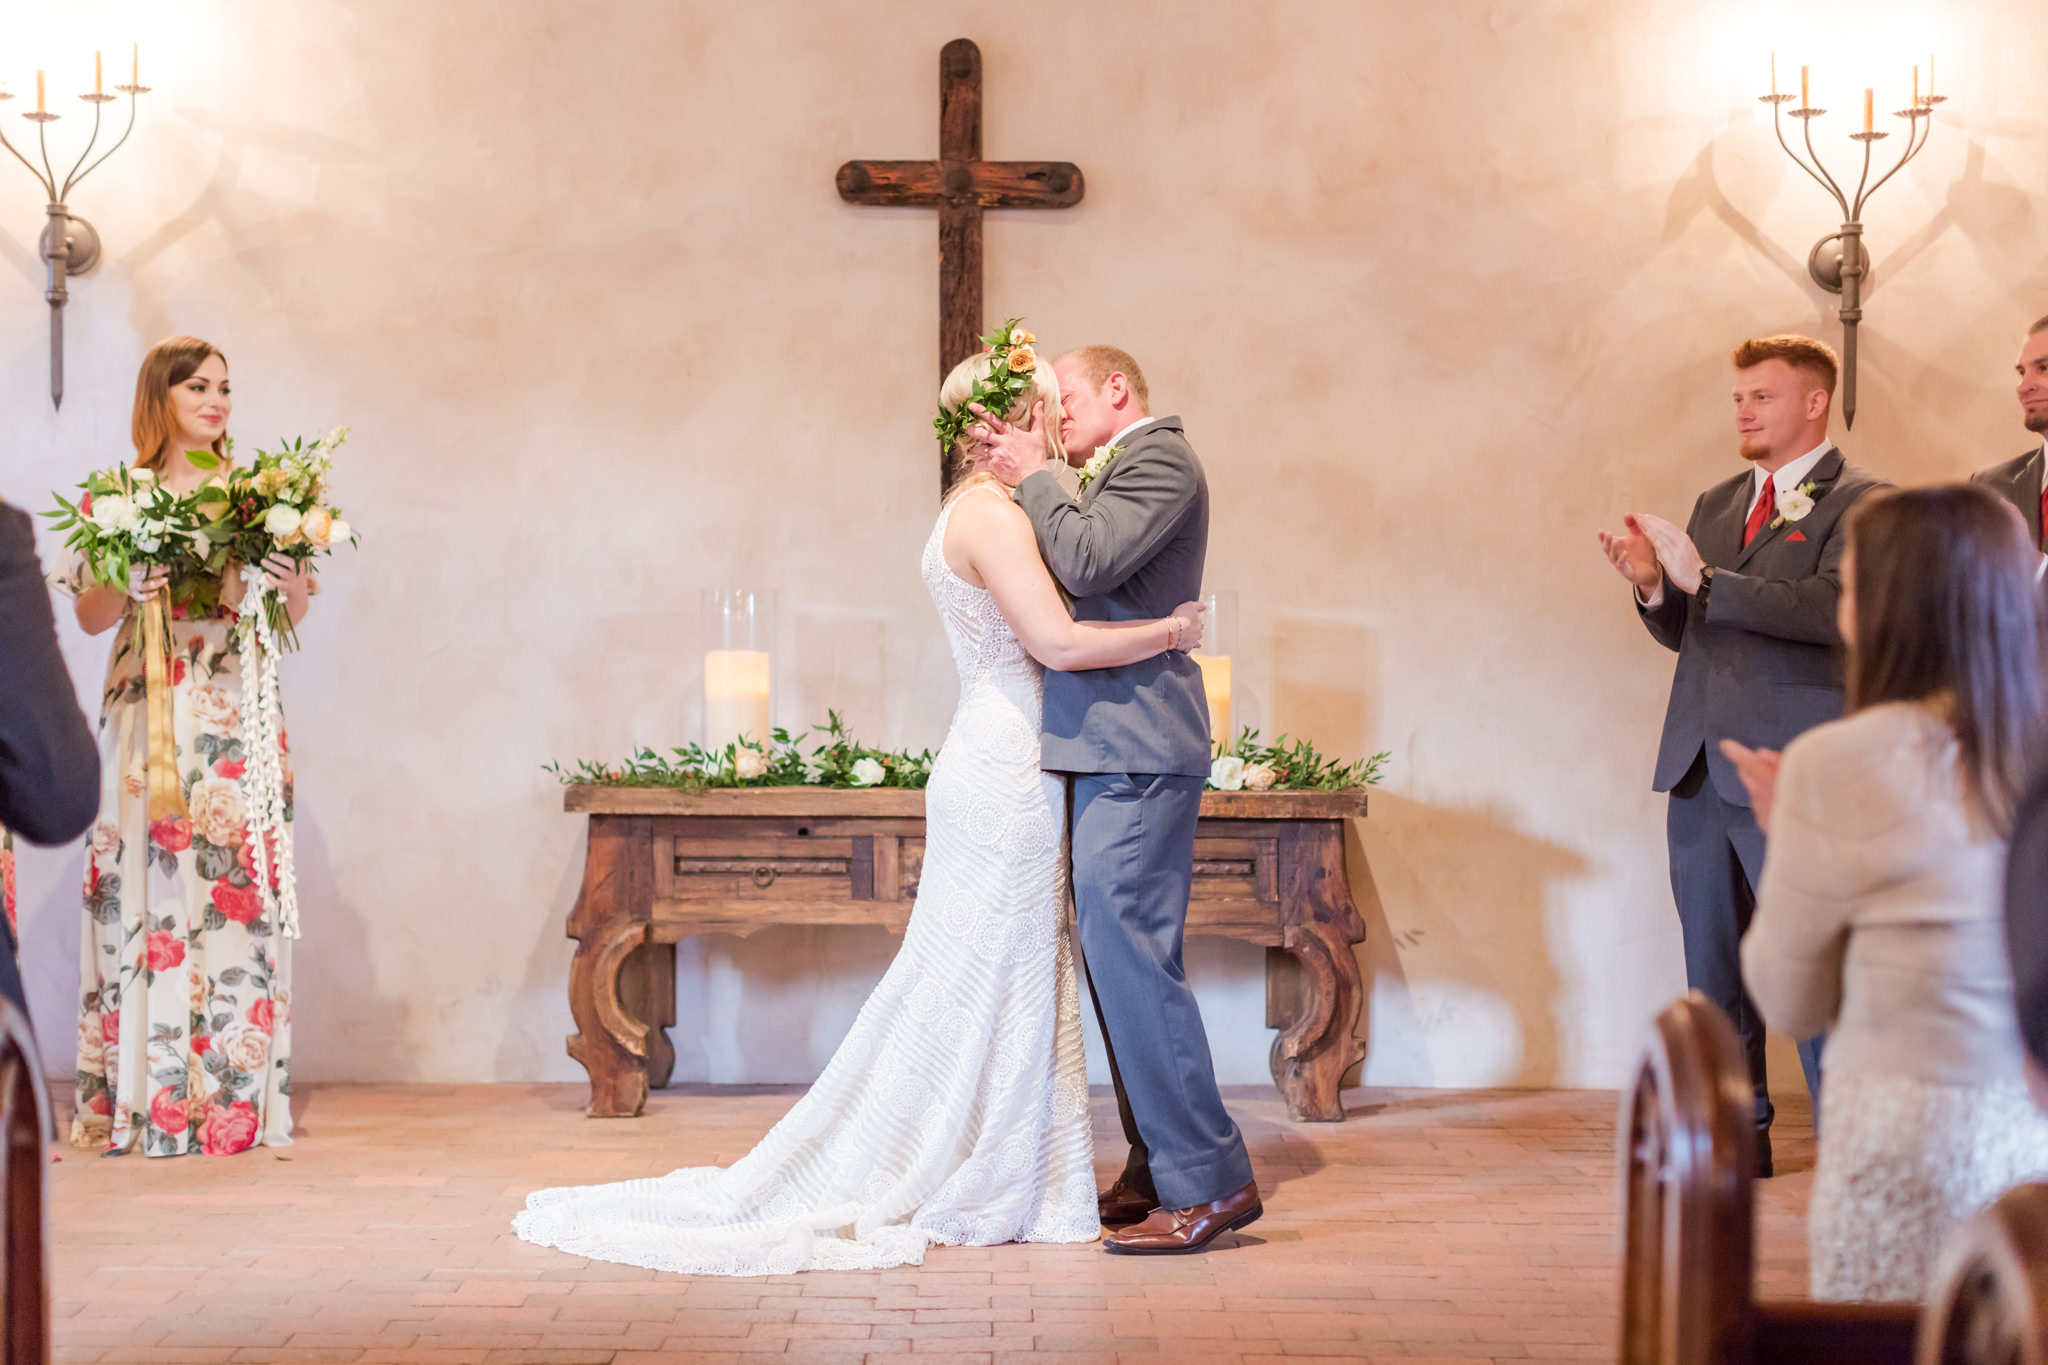 A Boho Inspired Wedding at Lost Mission in Spring Branch, TX by Dawn Elizabeth Studios, San Antonio Wedding Photographer, Boerne Wedding Photographer